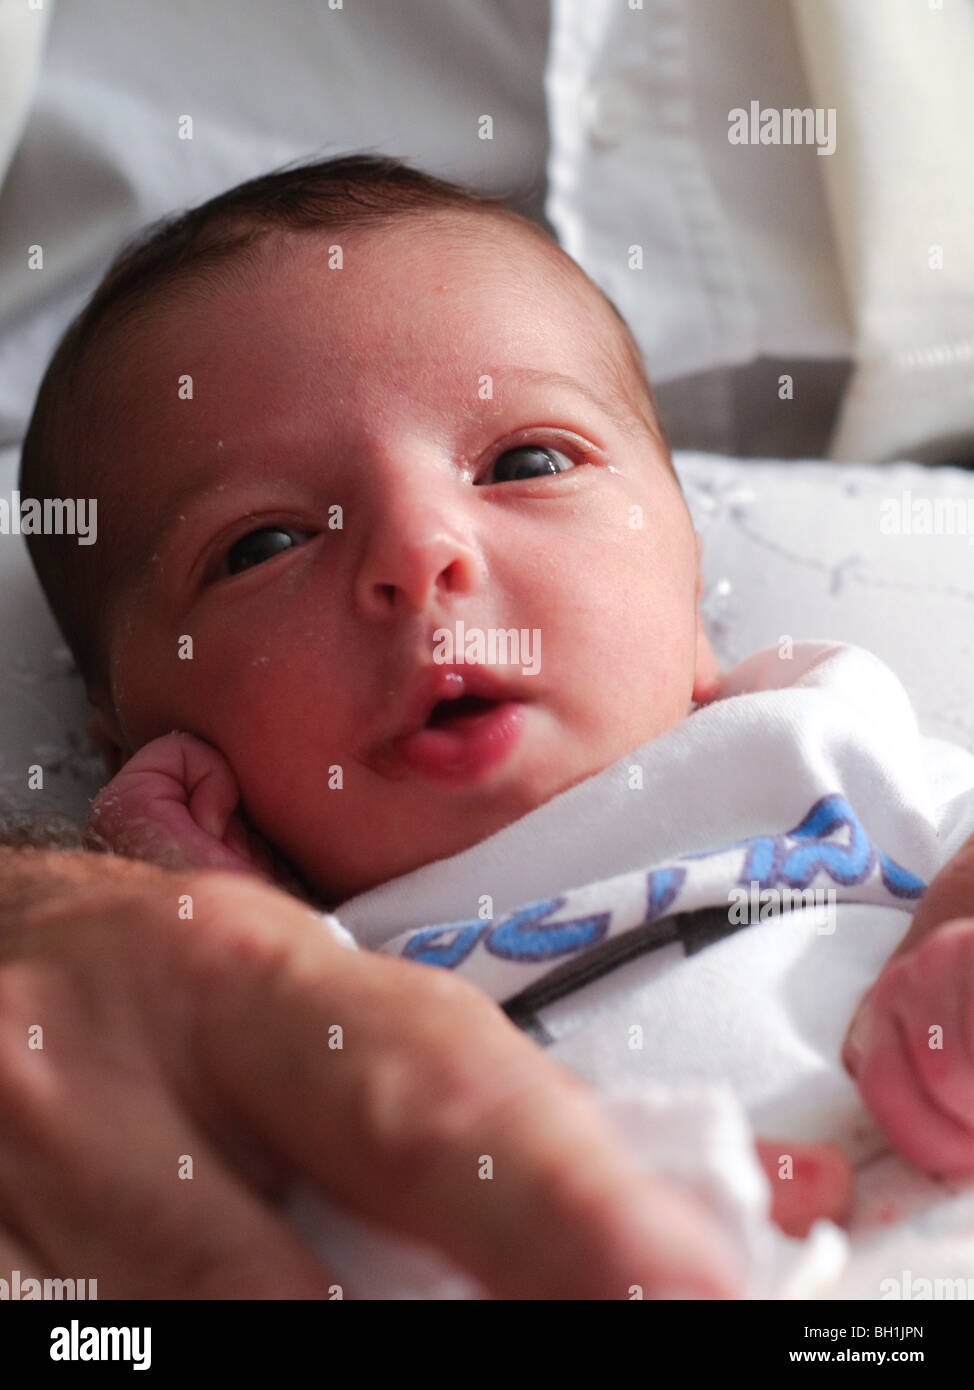 Beschneidung - Brit Mila Zeremonie. Glückliches acht Tage altes Baby vor der Zeremonie Model-Release verfügbar Stockfoto